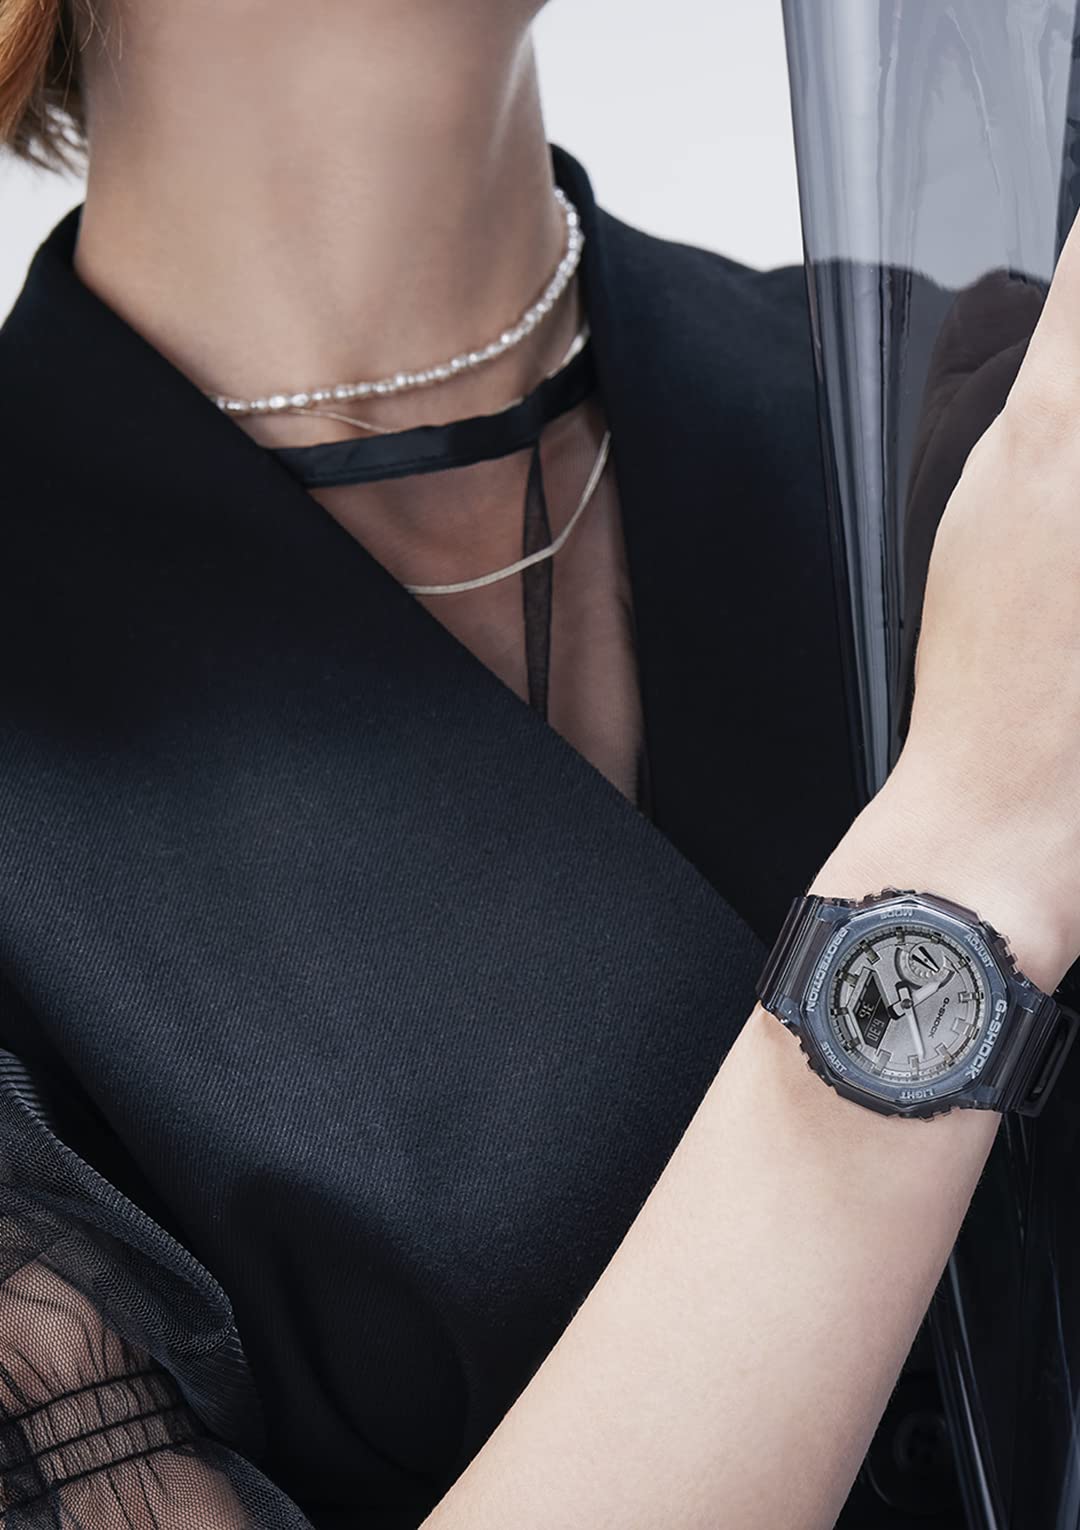 [カシオ] 腕時計 ジーショック 【国内正規品】ミッドサイズモデル GMA-S2100SK-1AJF レディース ブラック スケルトン - BanzaiHobby